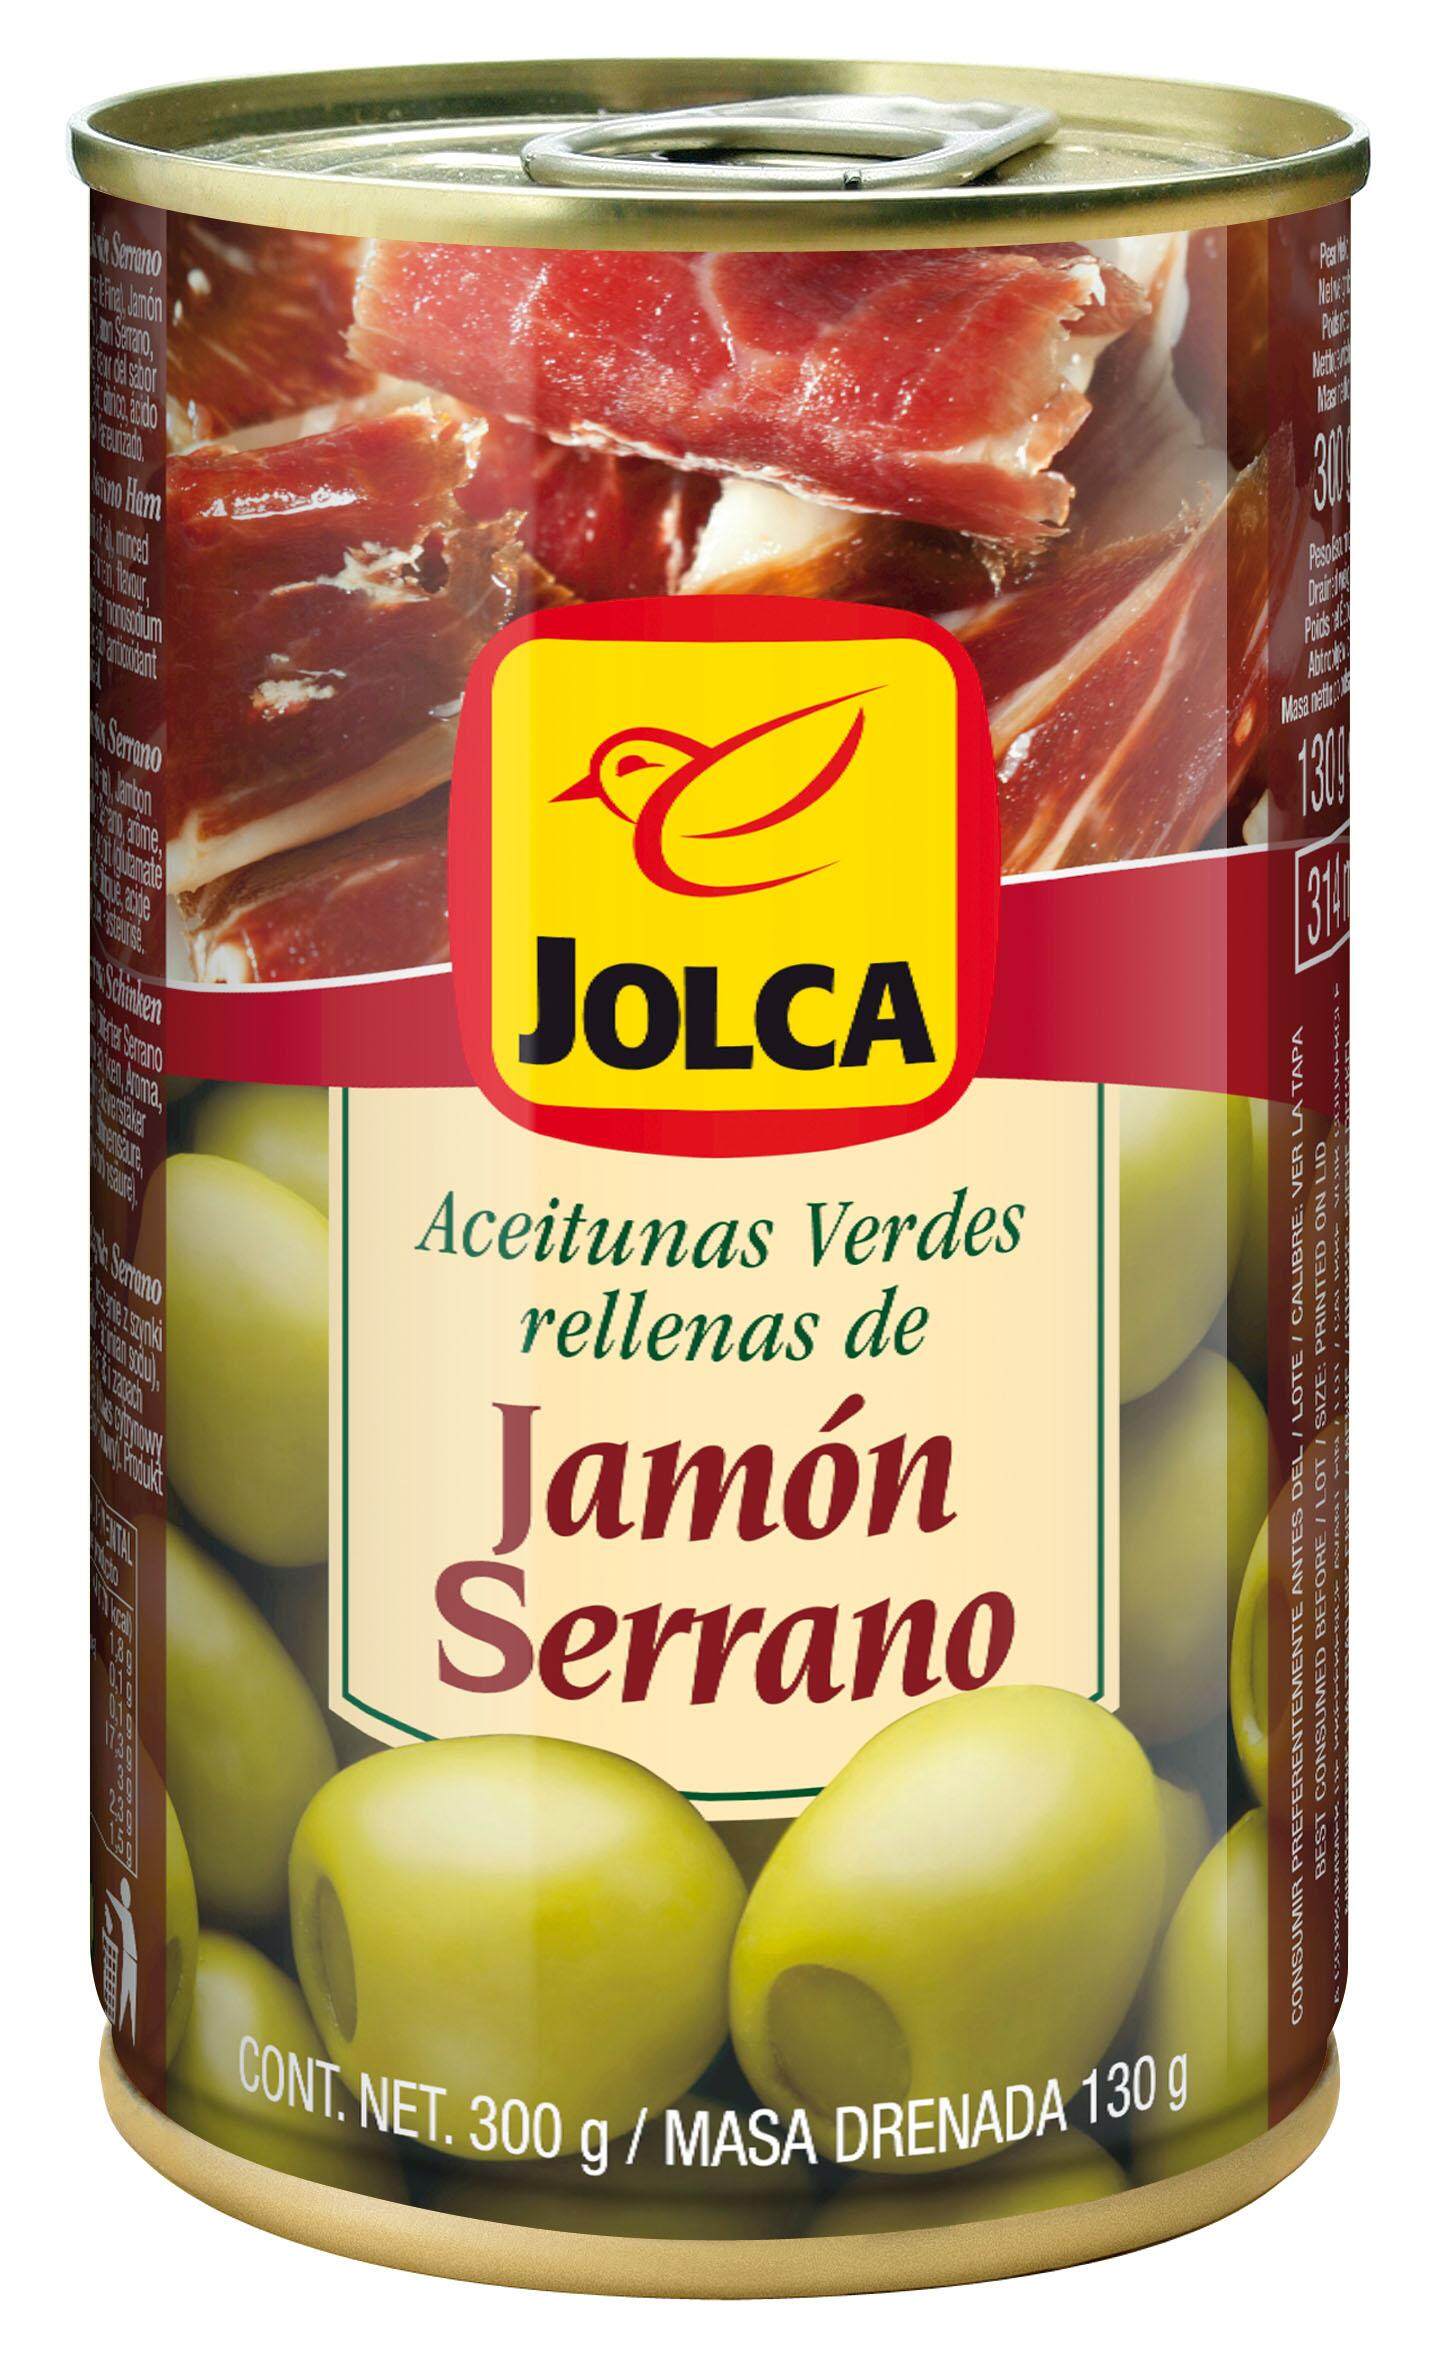 JOLCA มะกอกเขียวไร้เมล็ดยัดไส้แฮม นำเข้าจากประเทศสเปน ต้นตำรับมะกอกสายพันธุ์ดีที่สุดในโลก ขนาด 300 กรัม